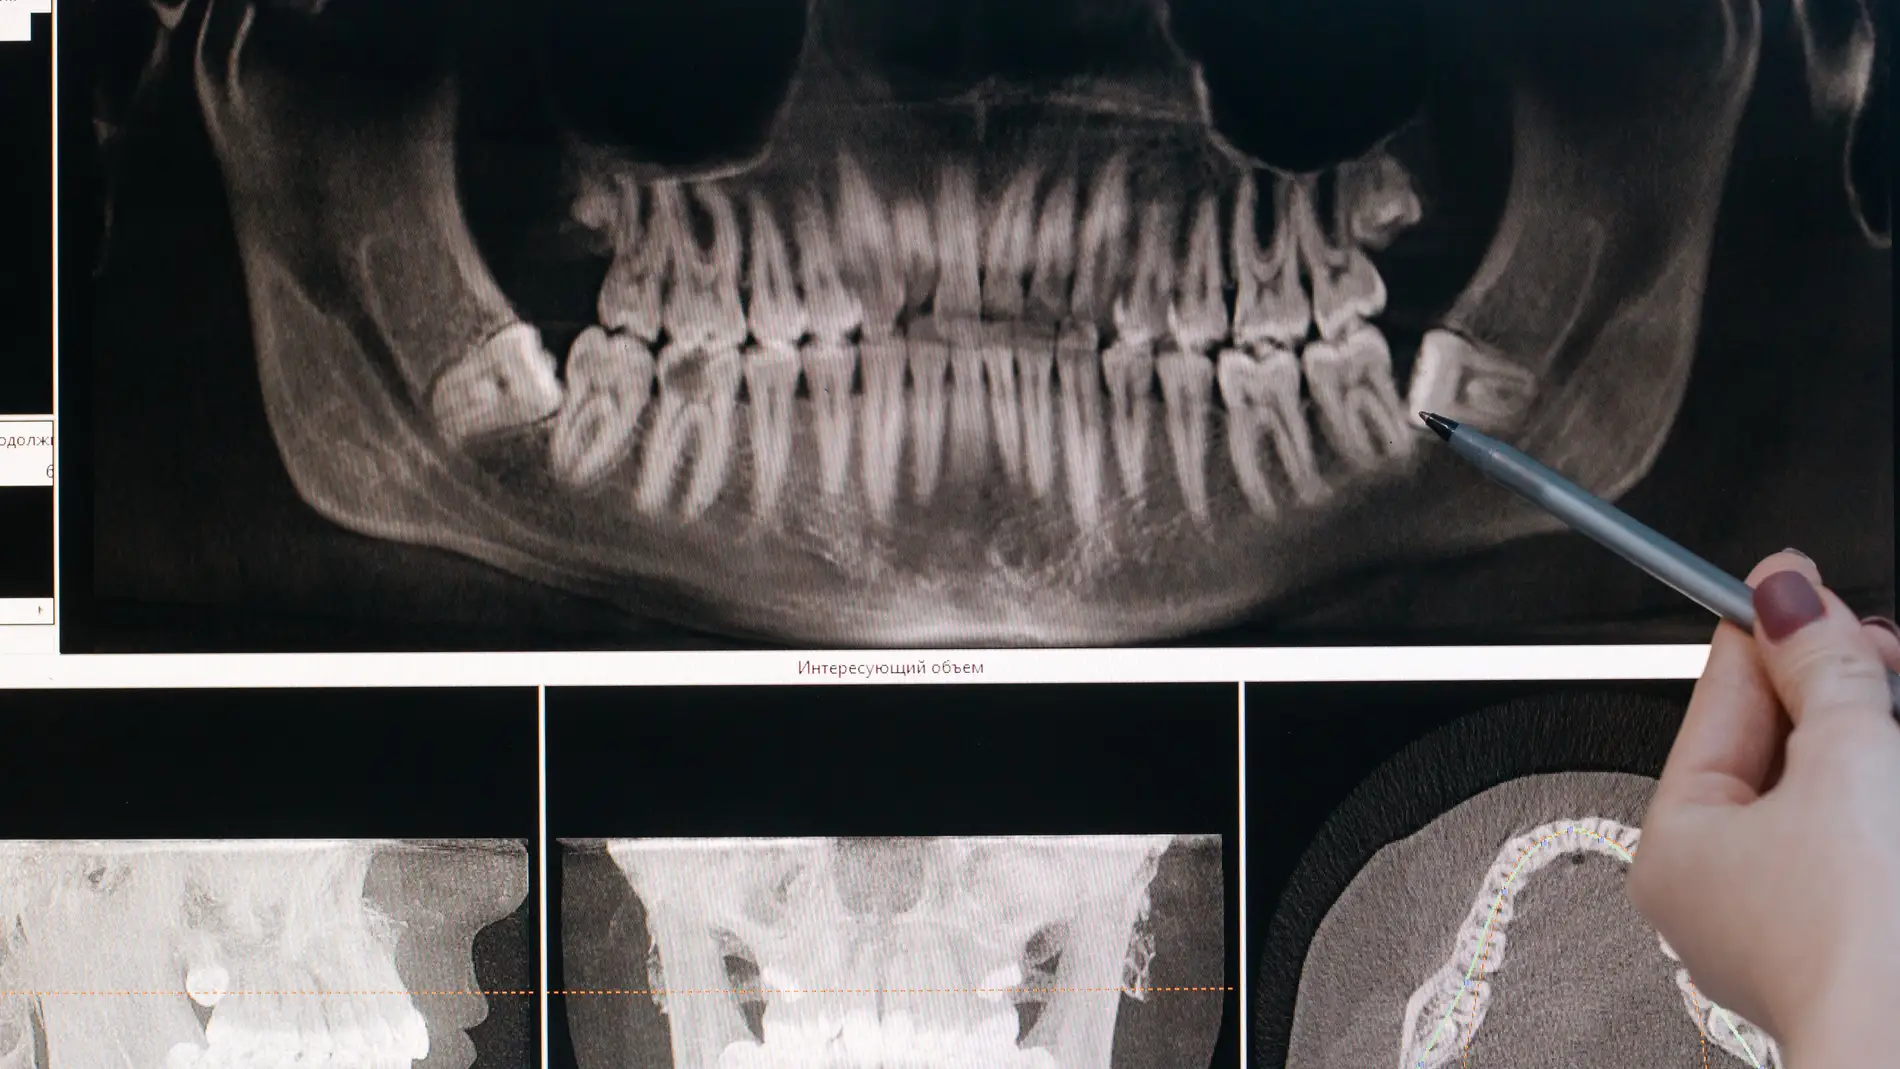 Radiografía maxilofacial